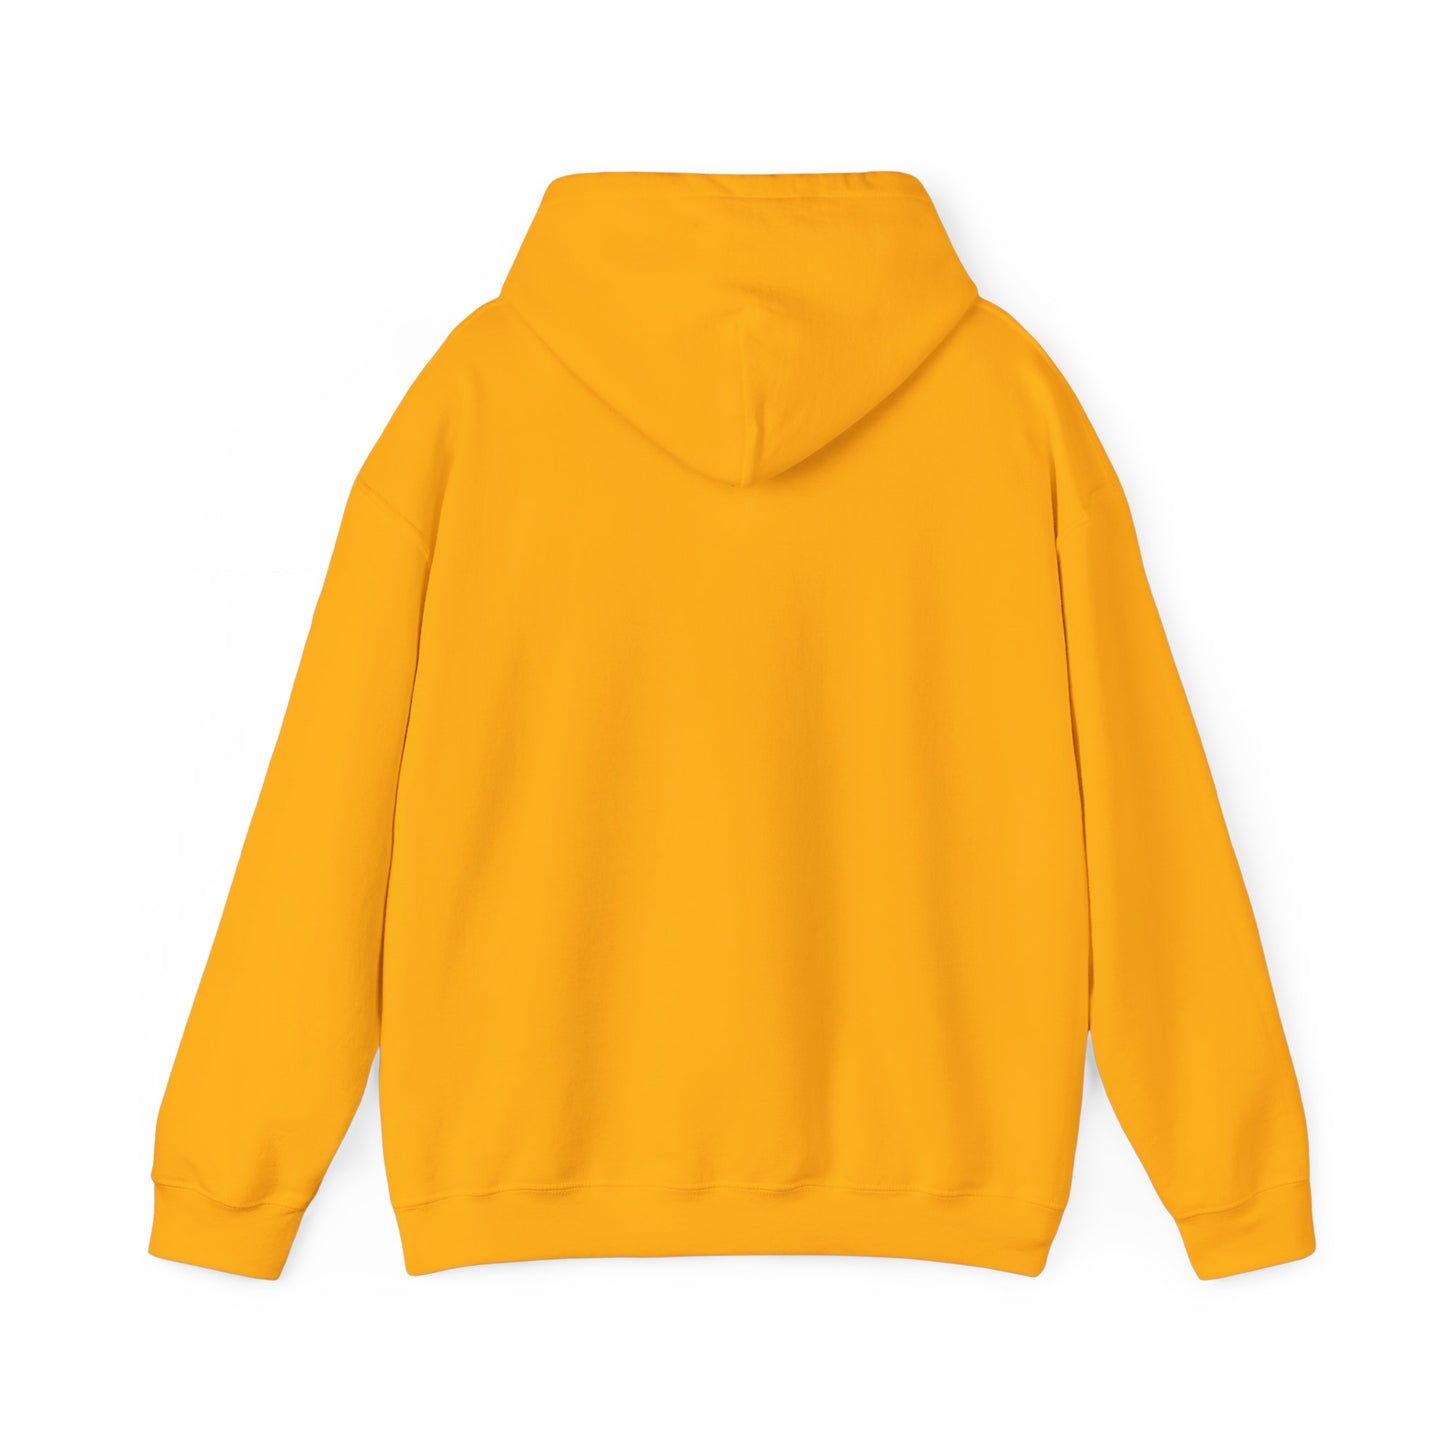 Faith Over Fear Unisex Heavy Blend™ Hooded Sweatshirt